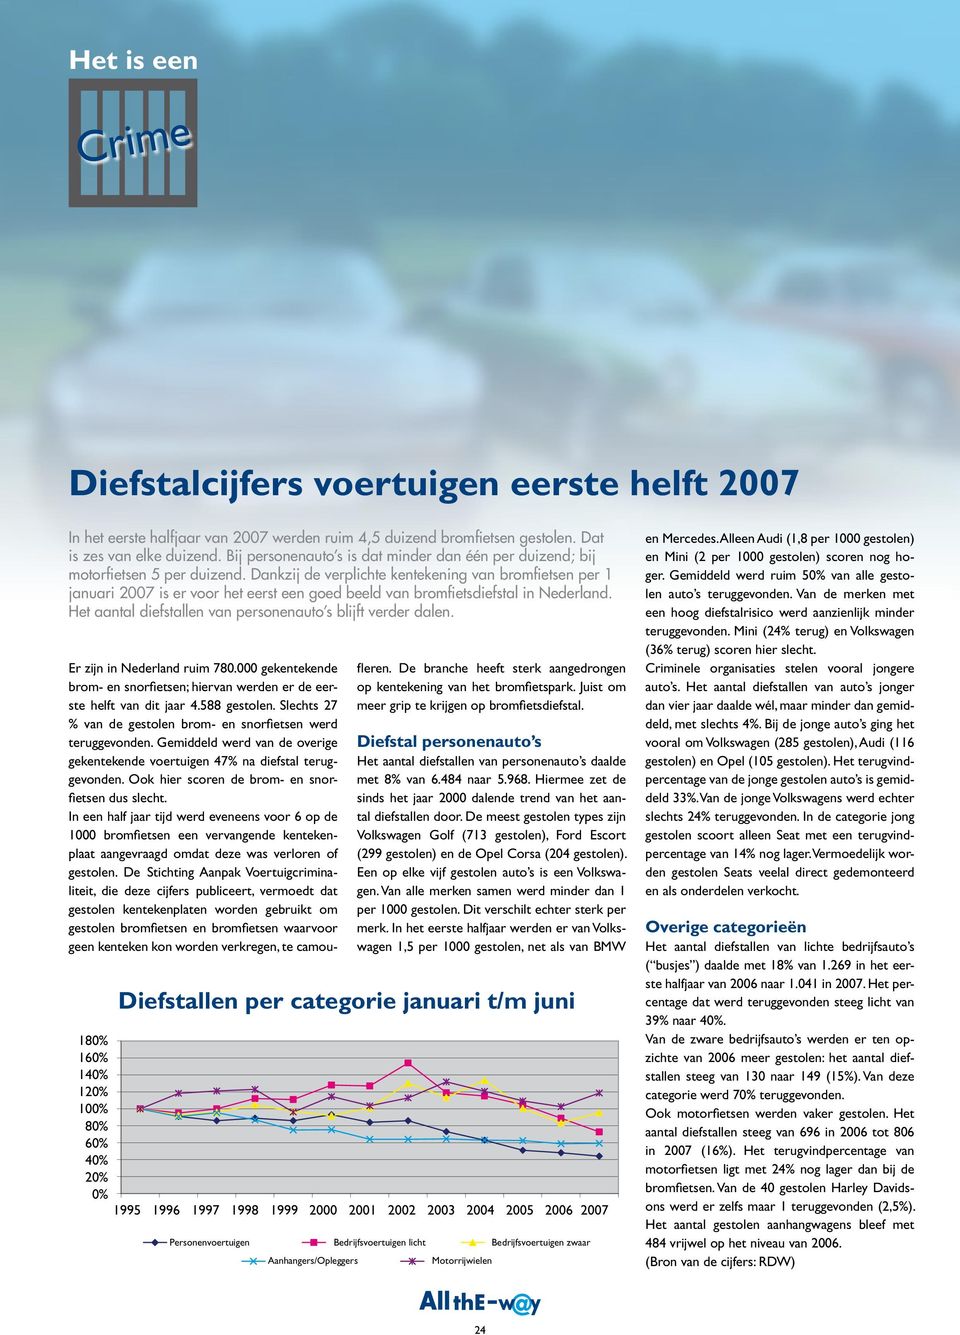 Dankzij de verplichte kentekening van bromfietsen per 1 januari 2007 is er voor het eerst een goed beeld van bromfietsdiefstal in Nederland.